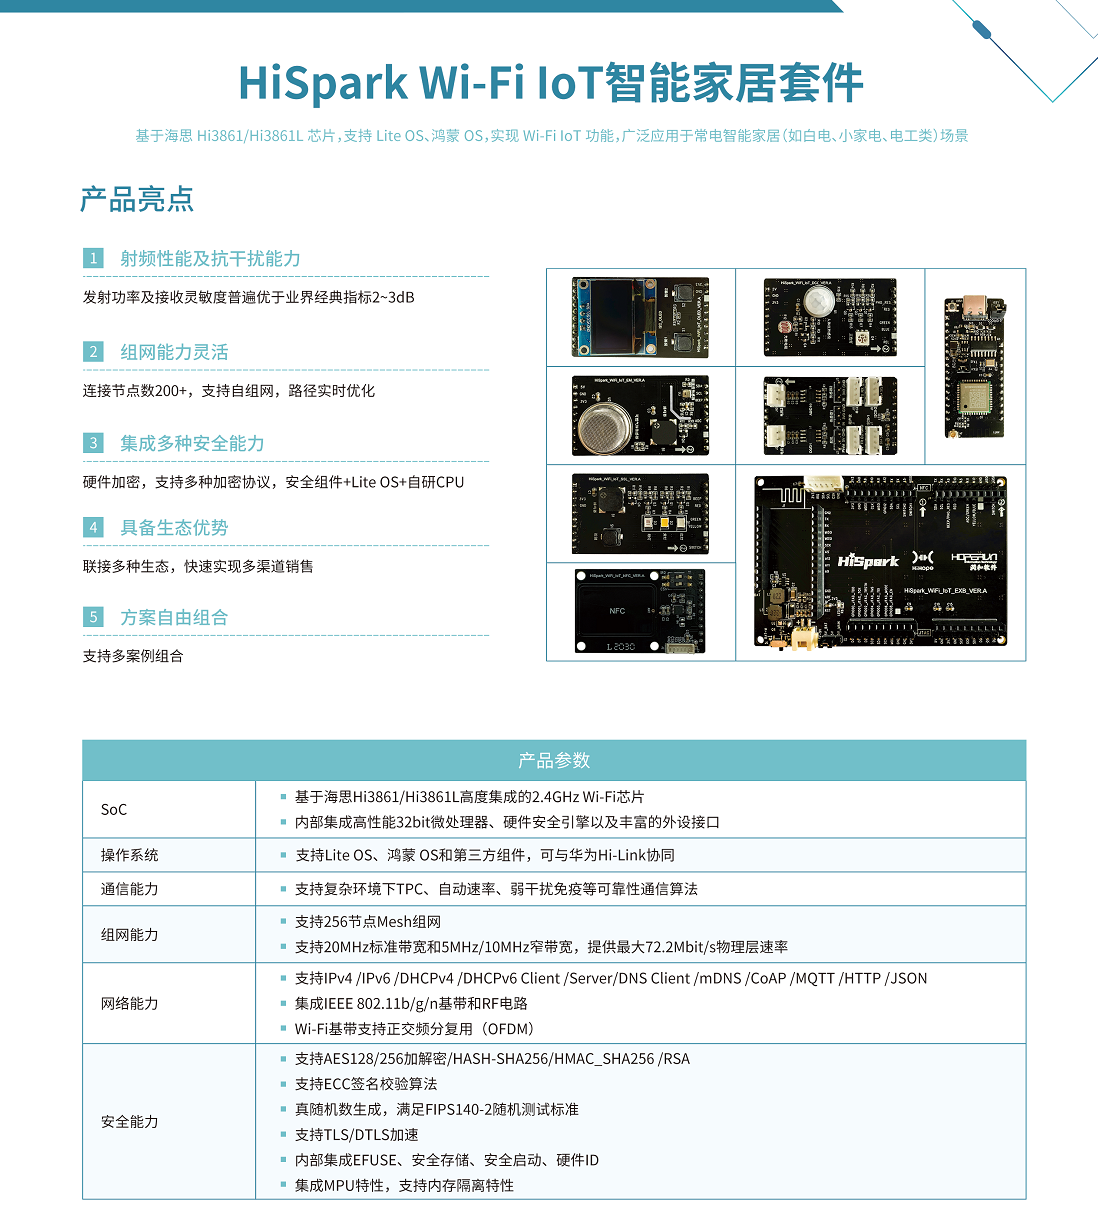 【鸿蒙开发板免费领】HiSpark Wi-Fi IoT开发套件免费试用来啦-开源基础软件社区